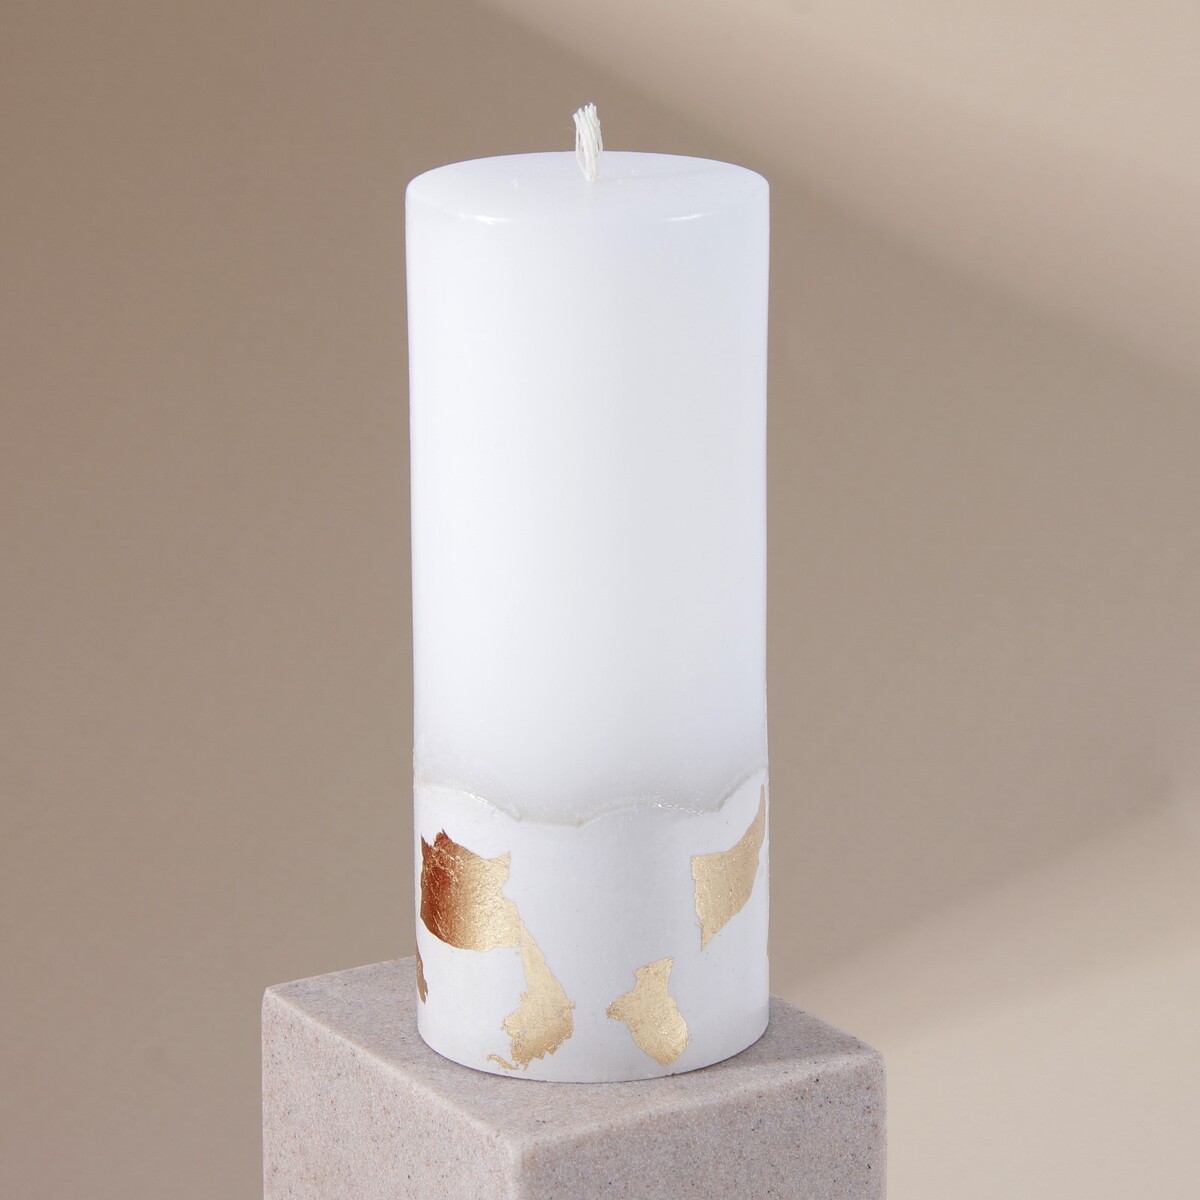 Свеча интерьерная белая с бетоном (поталь), 15 х 6 см свеча античная 2 2х26 см белая 2 ч